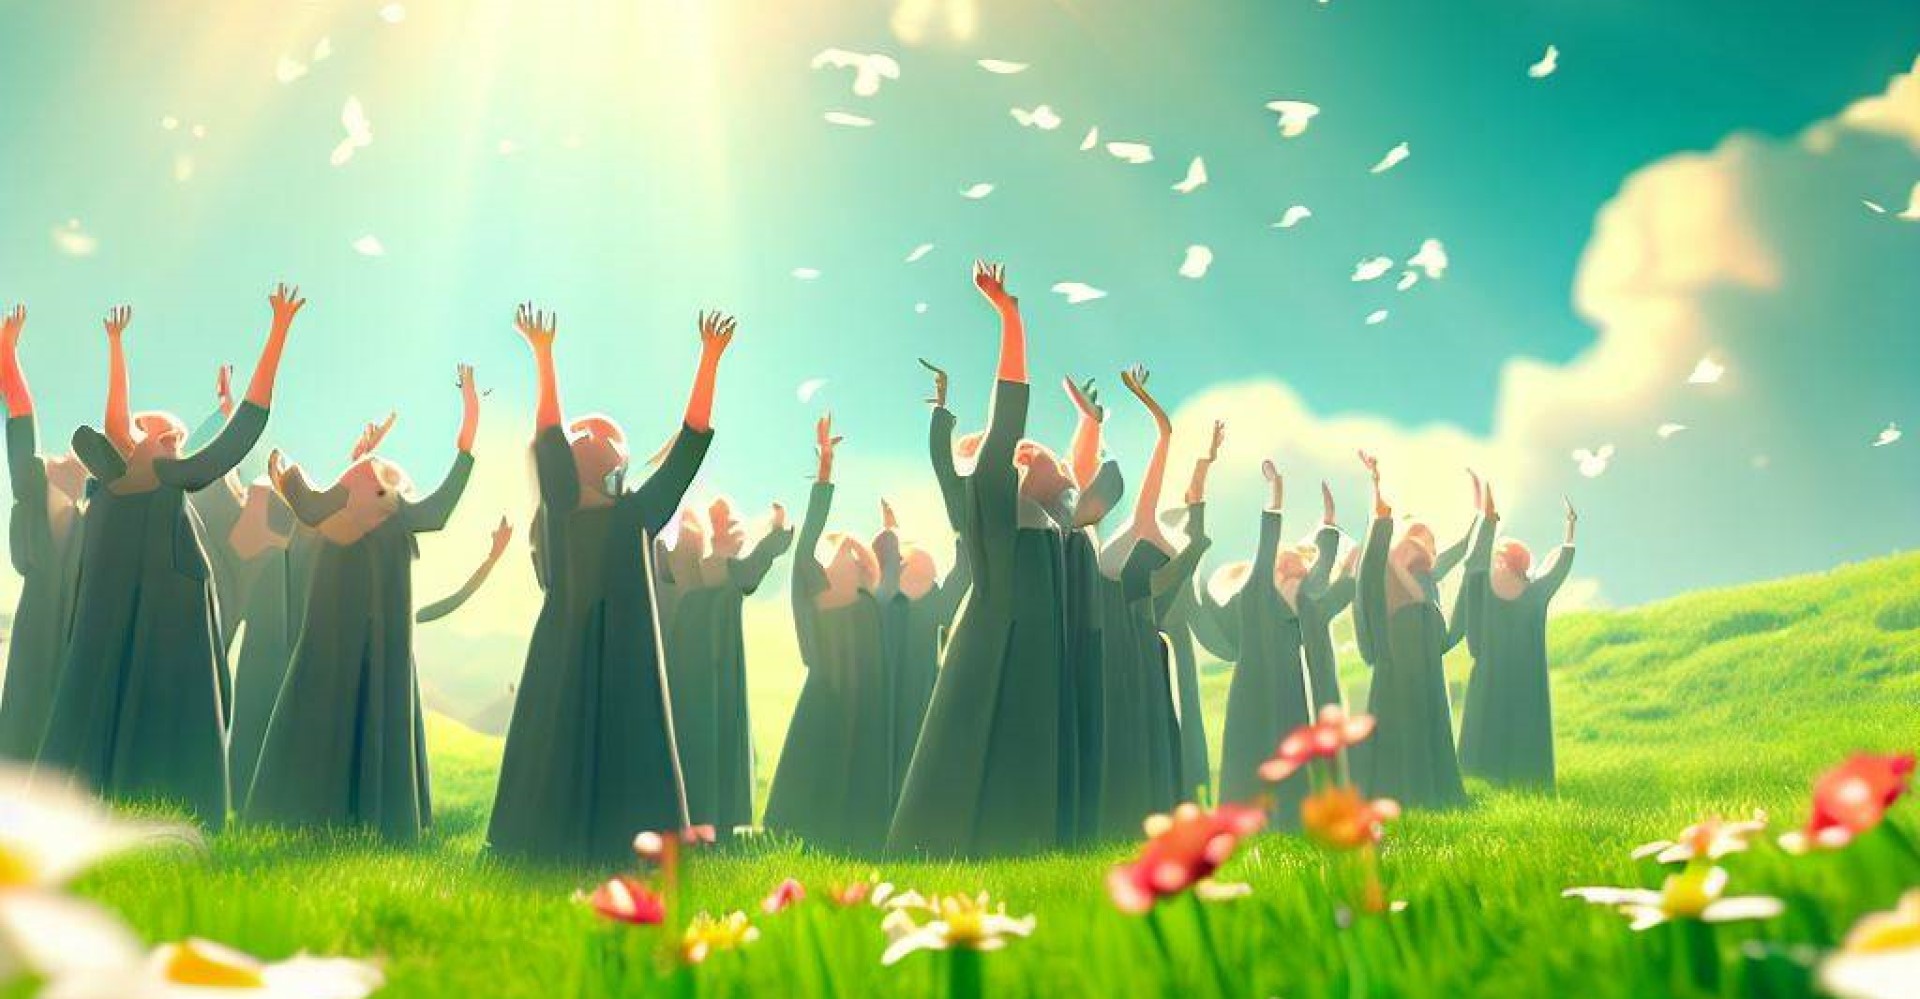 kuvassa kuorolaisia ylistää Jumalaa aurinkoisella, viheriäisellä niityllä